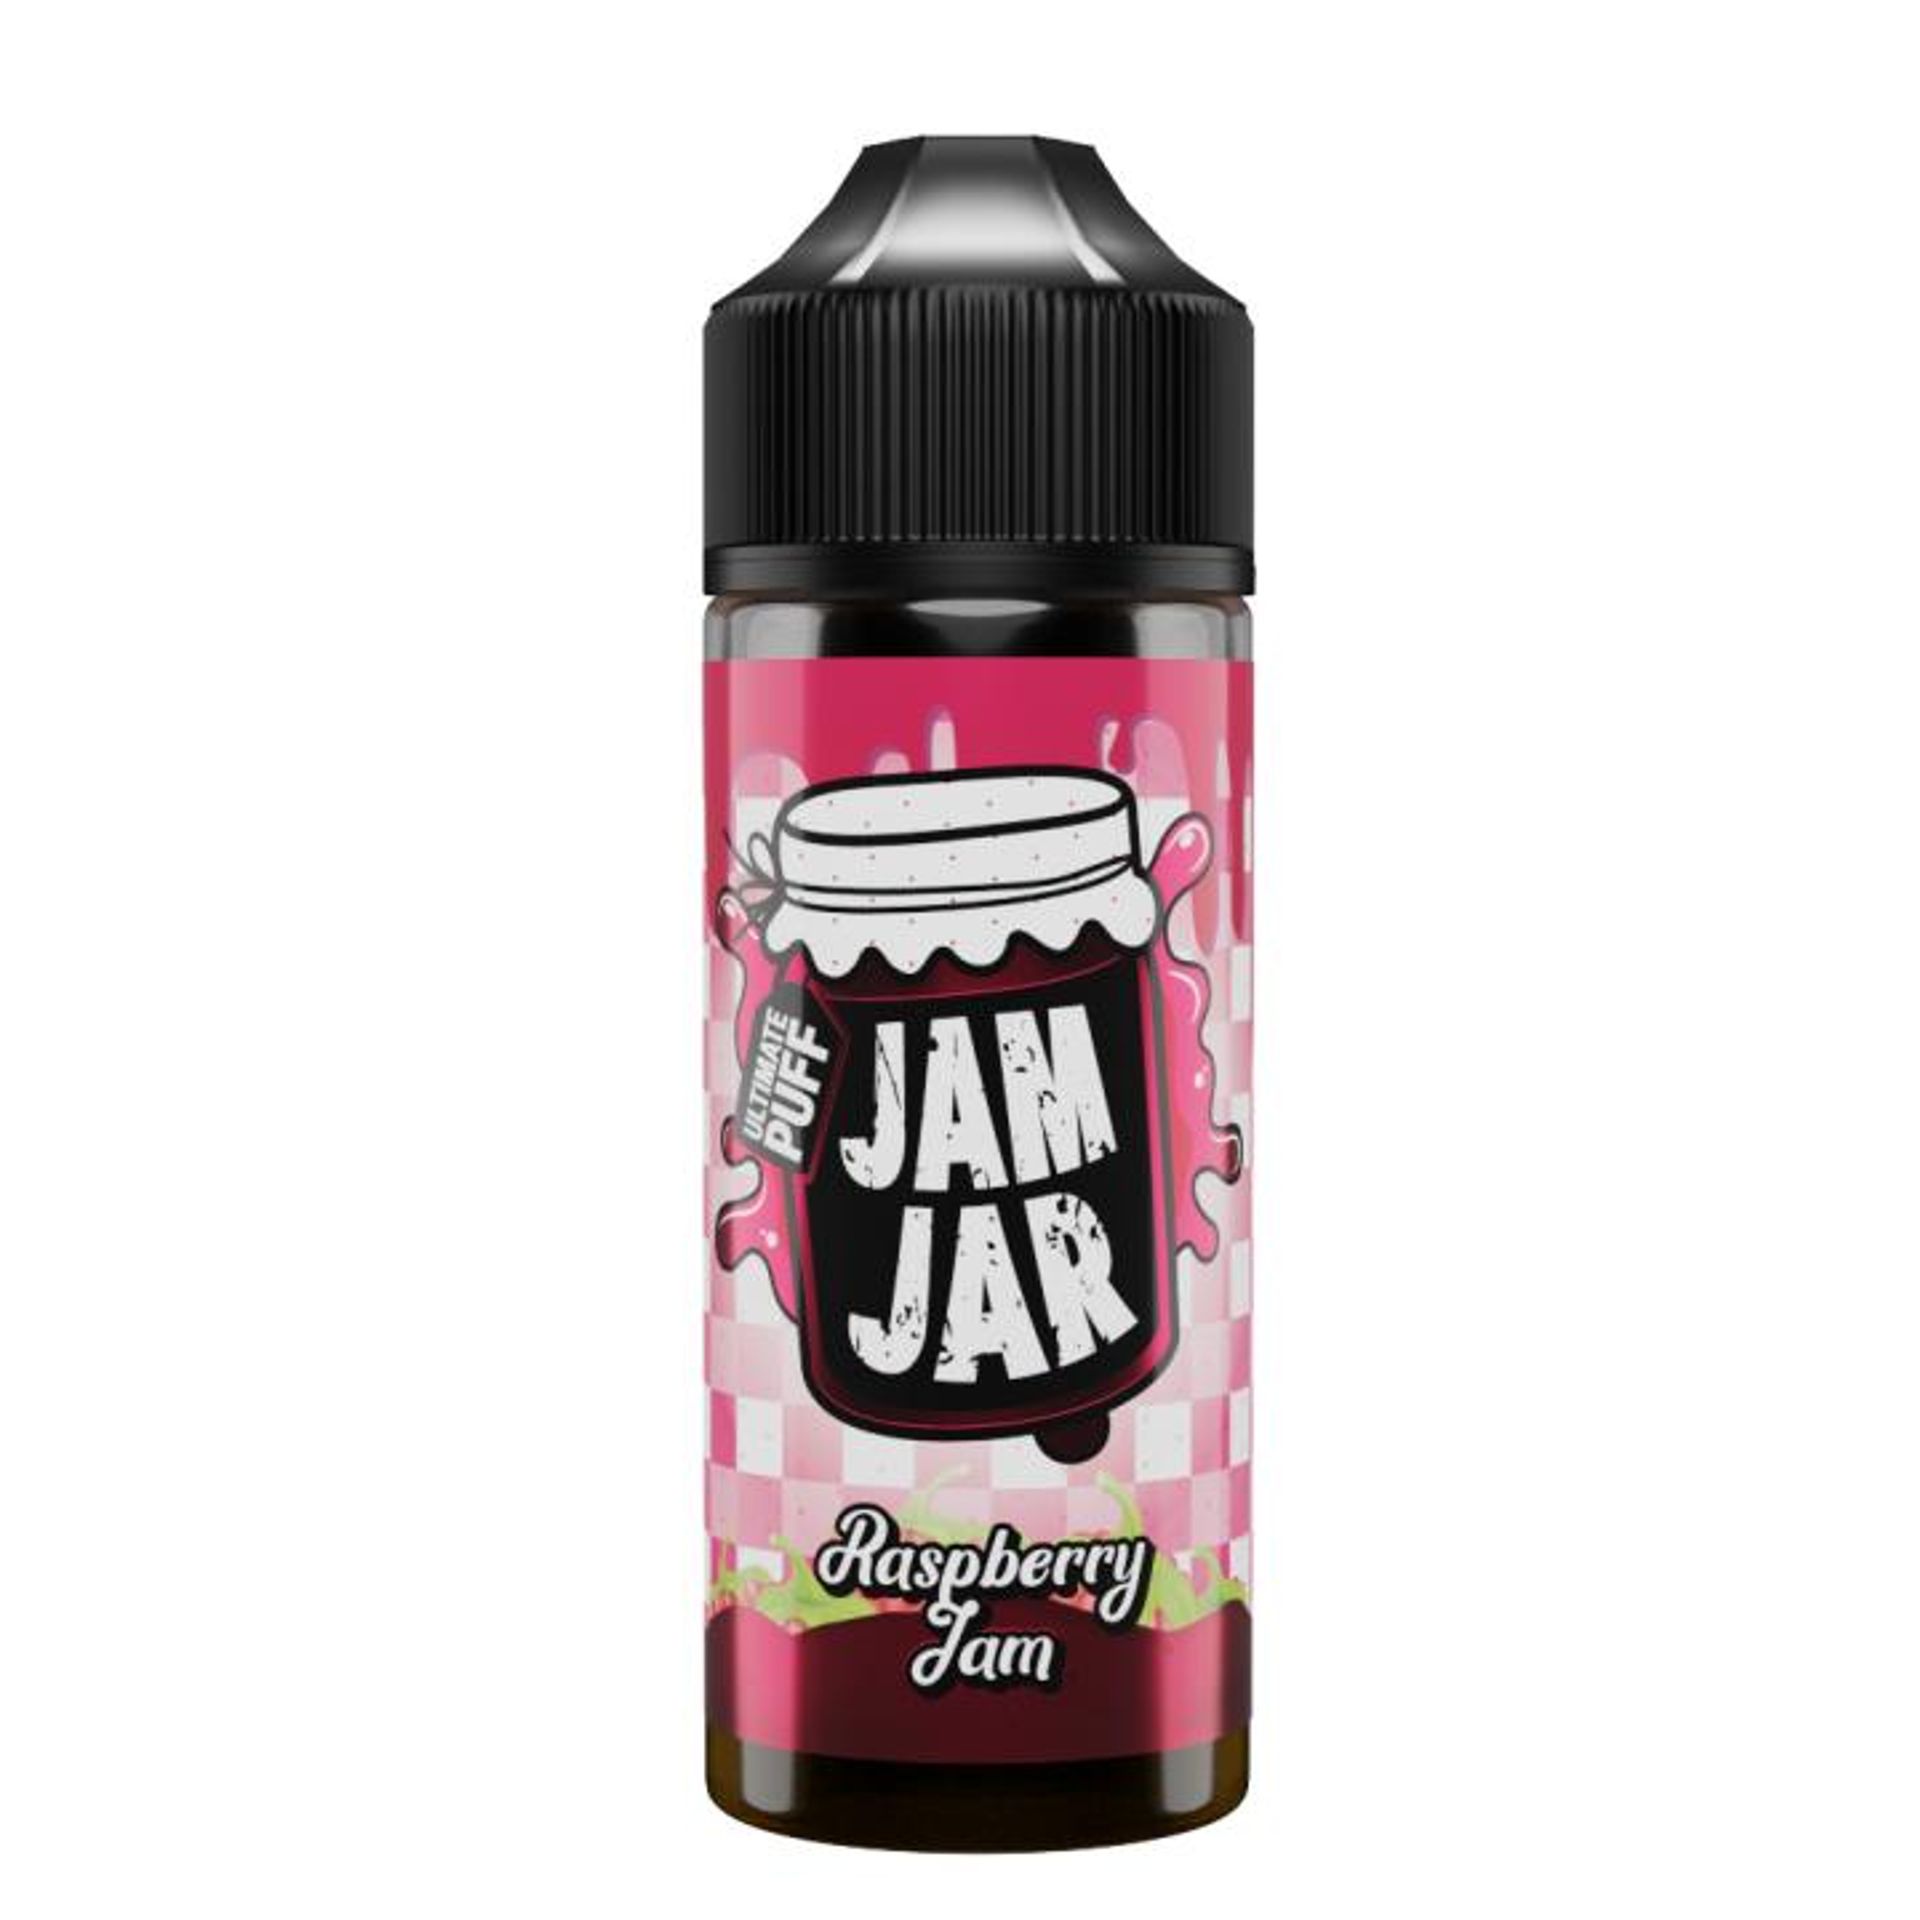 Image of Raspberry Jam by Jam Jar